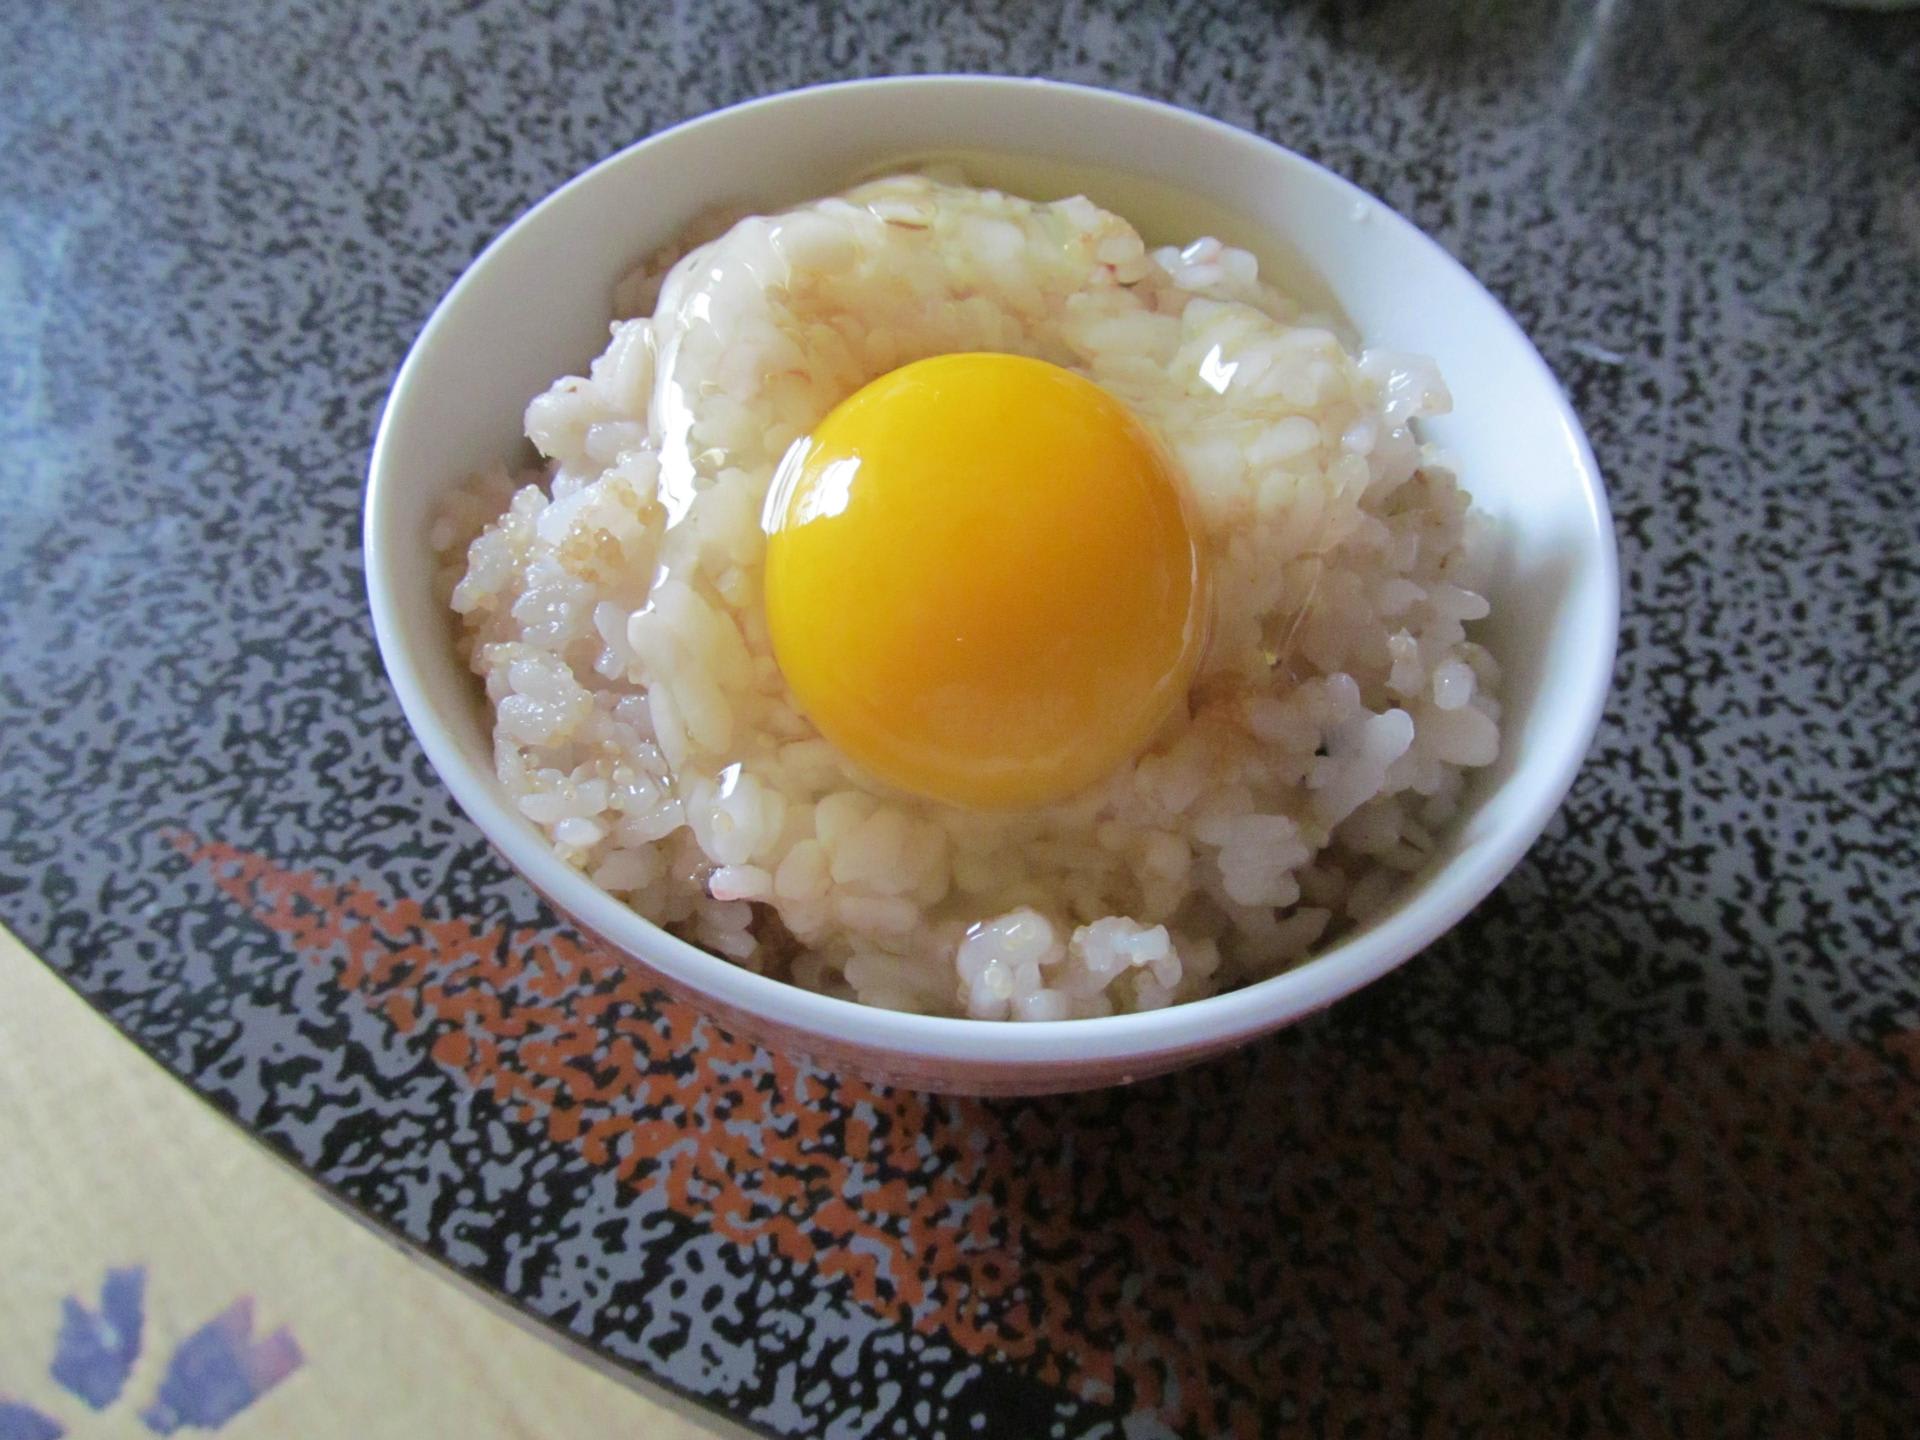 25日 日 卵かけご飯 26日 月 アカモク丼 病になりにくい身体のための朝食